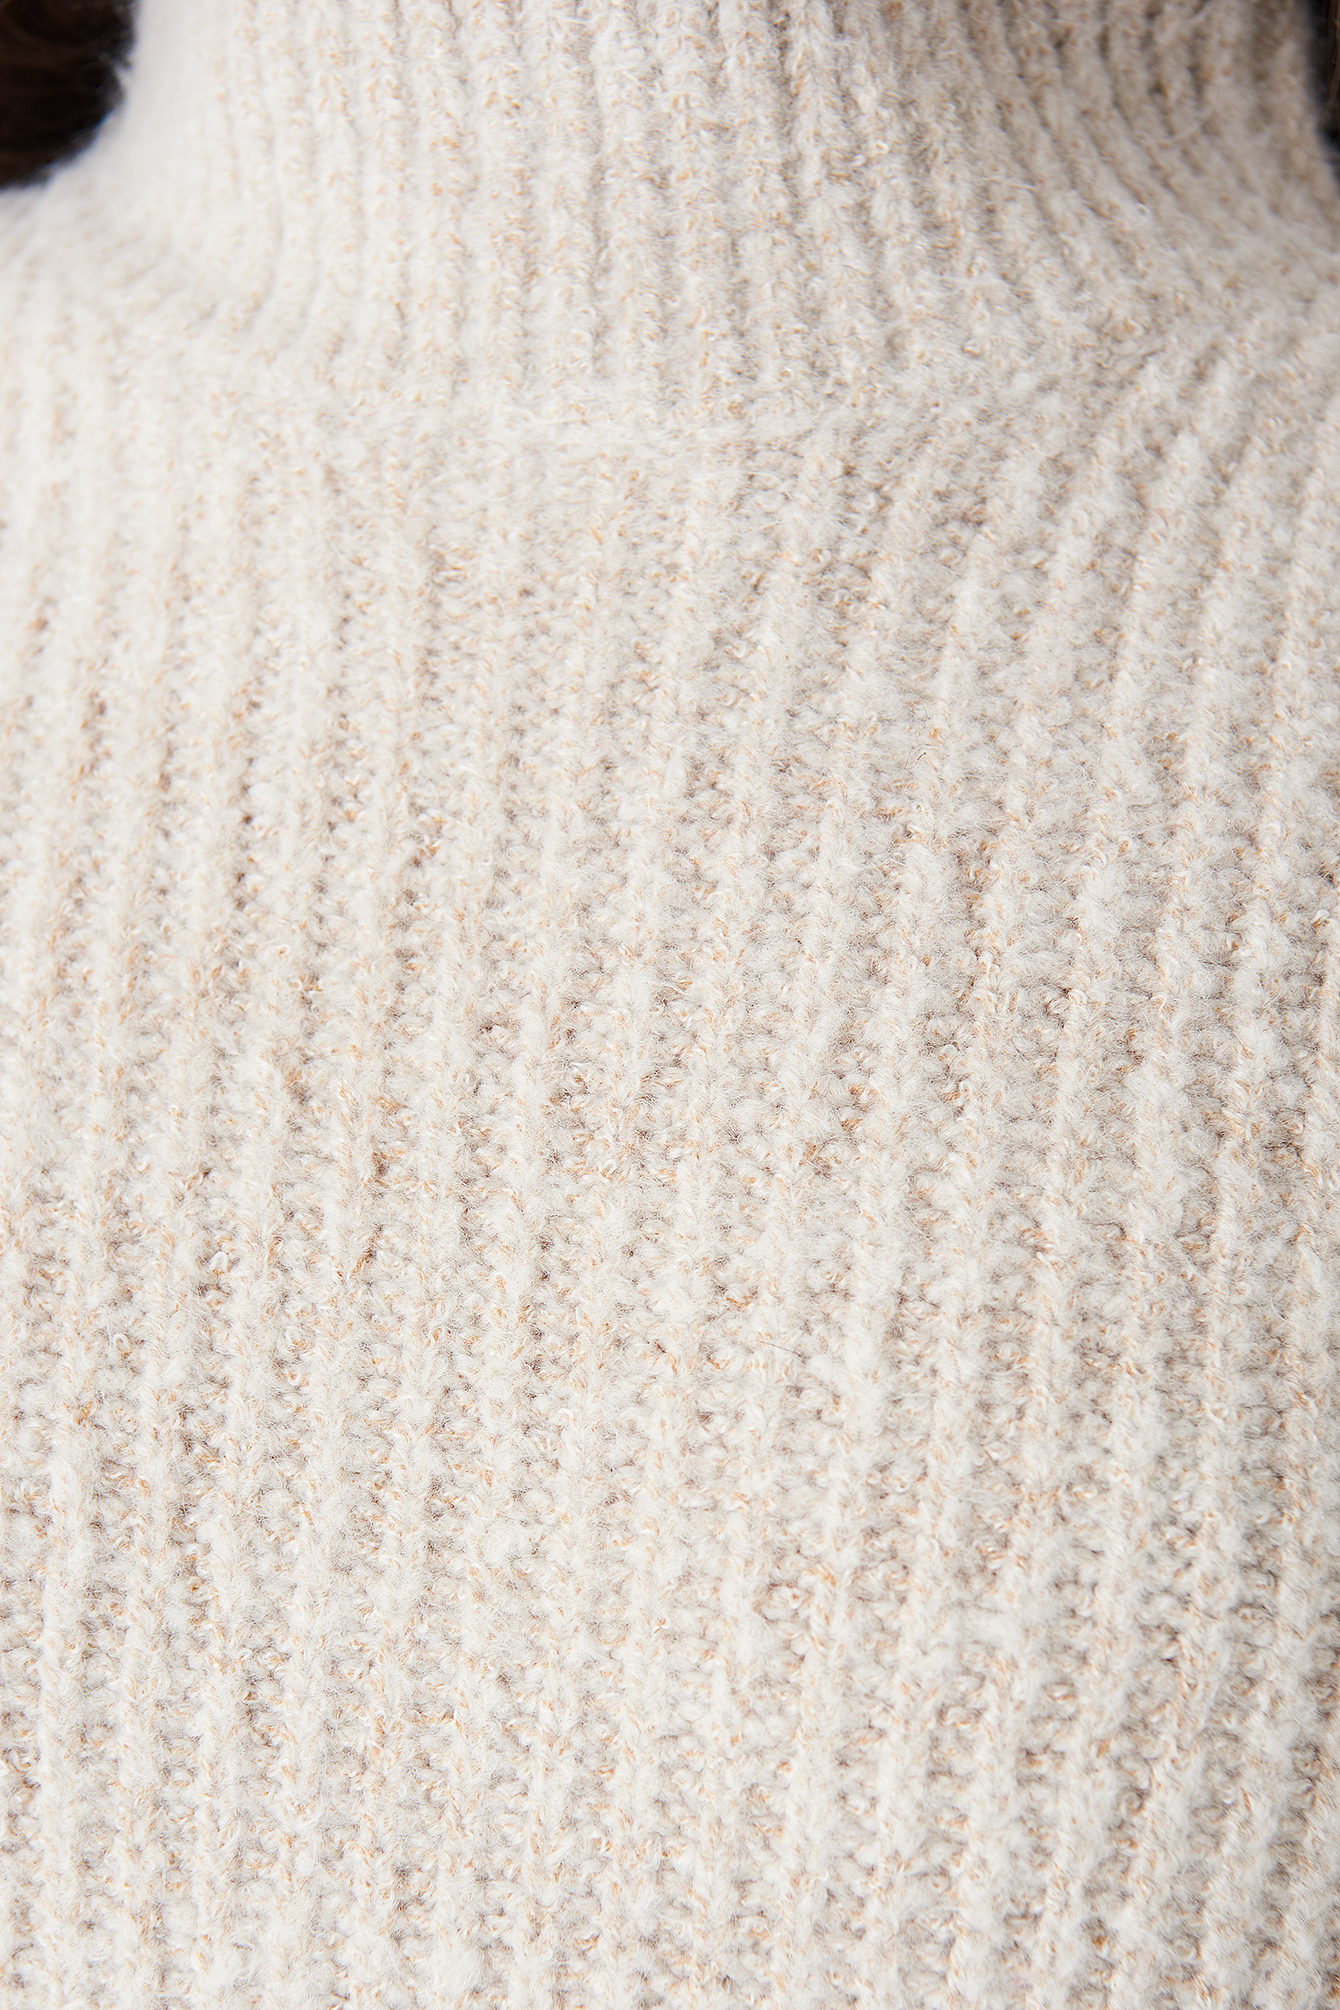 Dark Sand Marielle knit